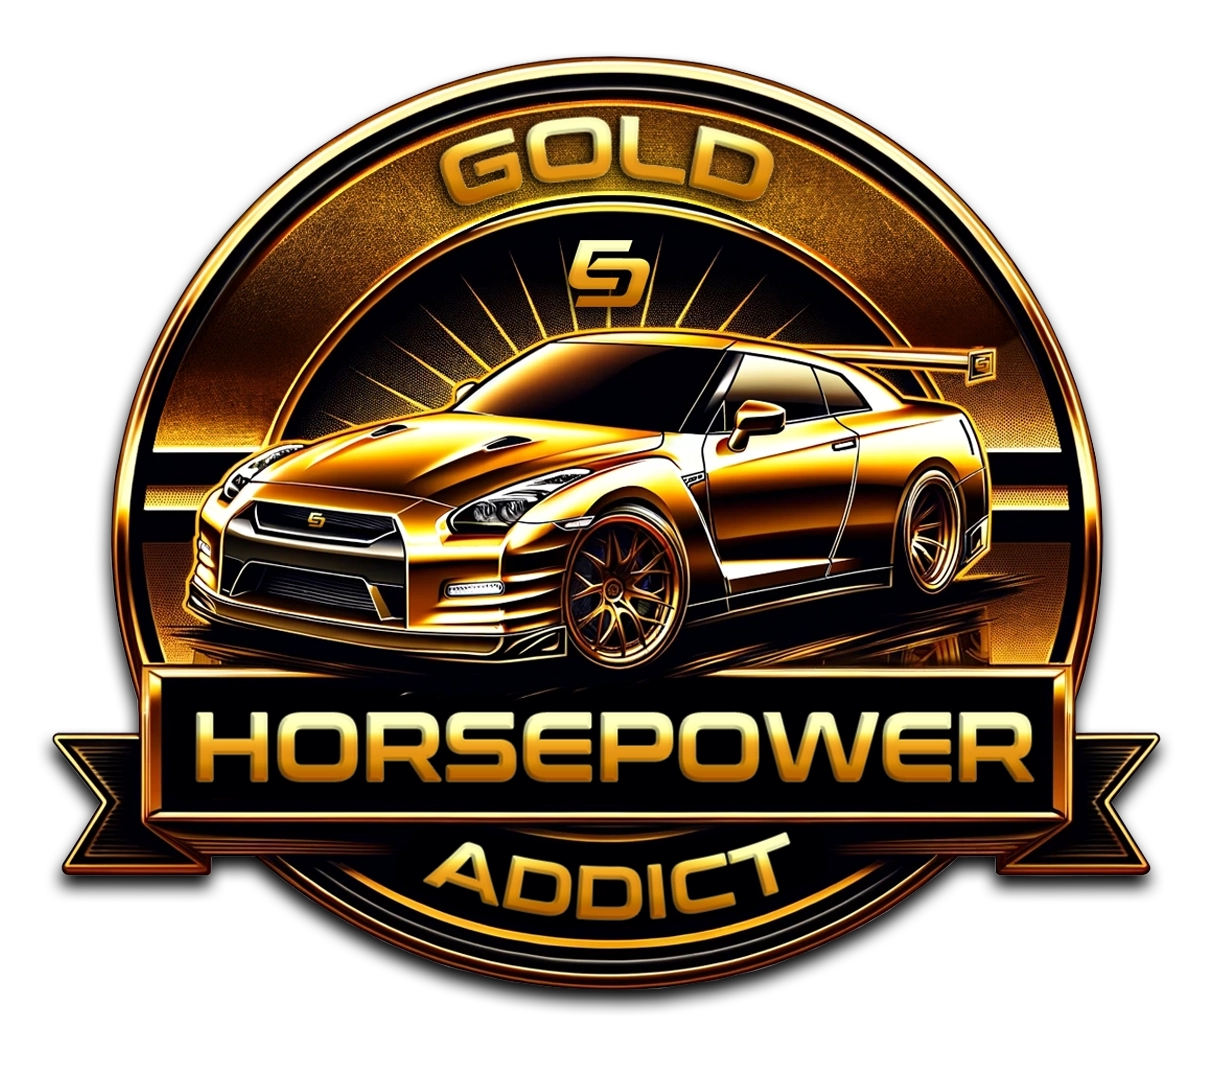 Horsepower addict badge- gold affiliate